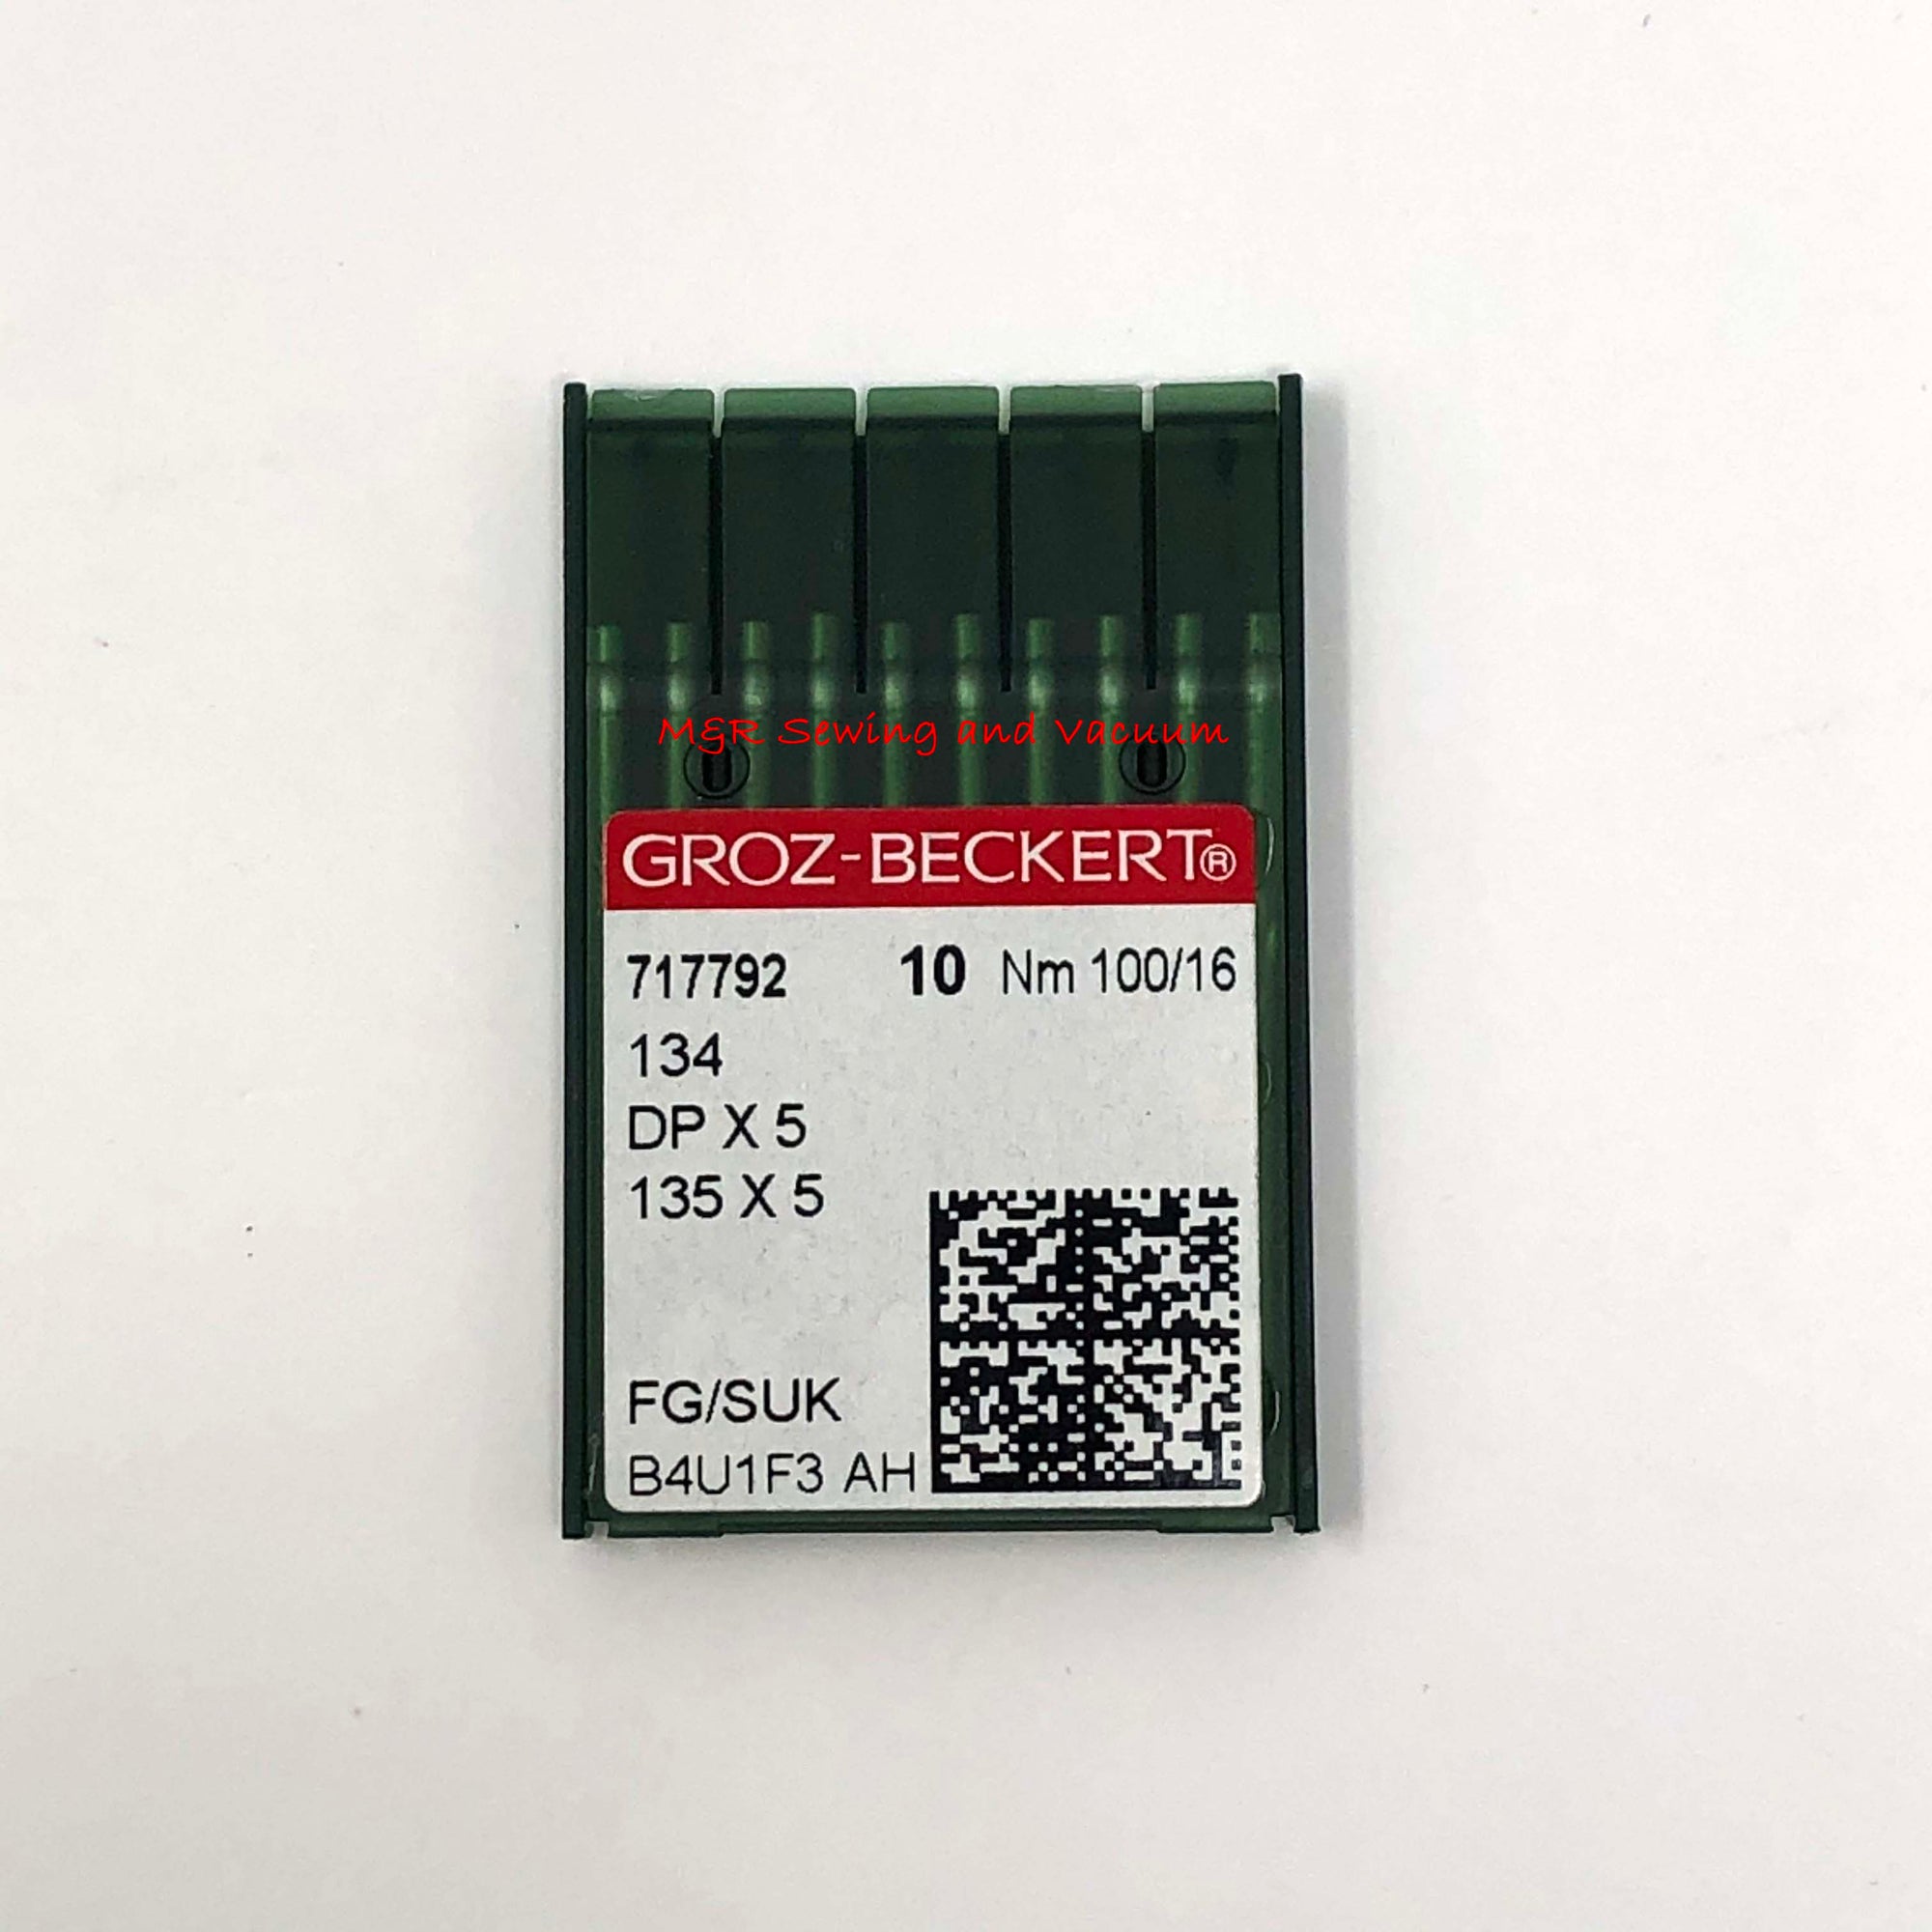 Groz-Beckert 134R (DPx5) Needles - 100/16